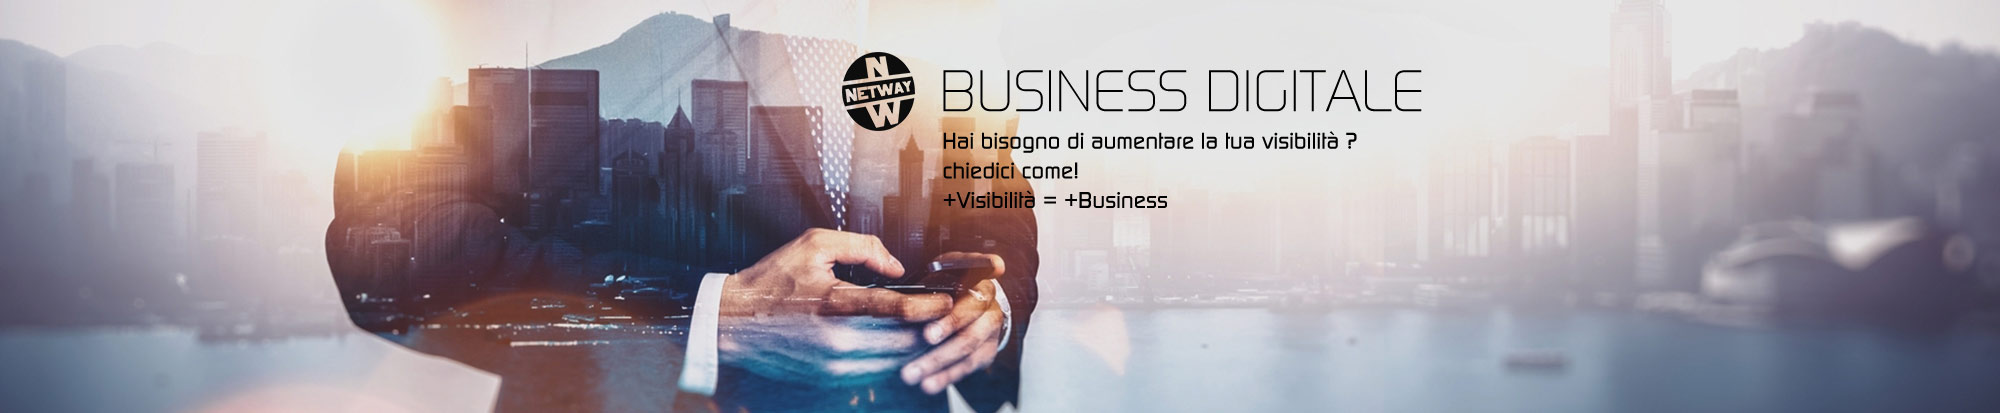 SEO Web Marketing e Strategie digitali per il tuo Business Brescia